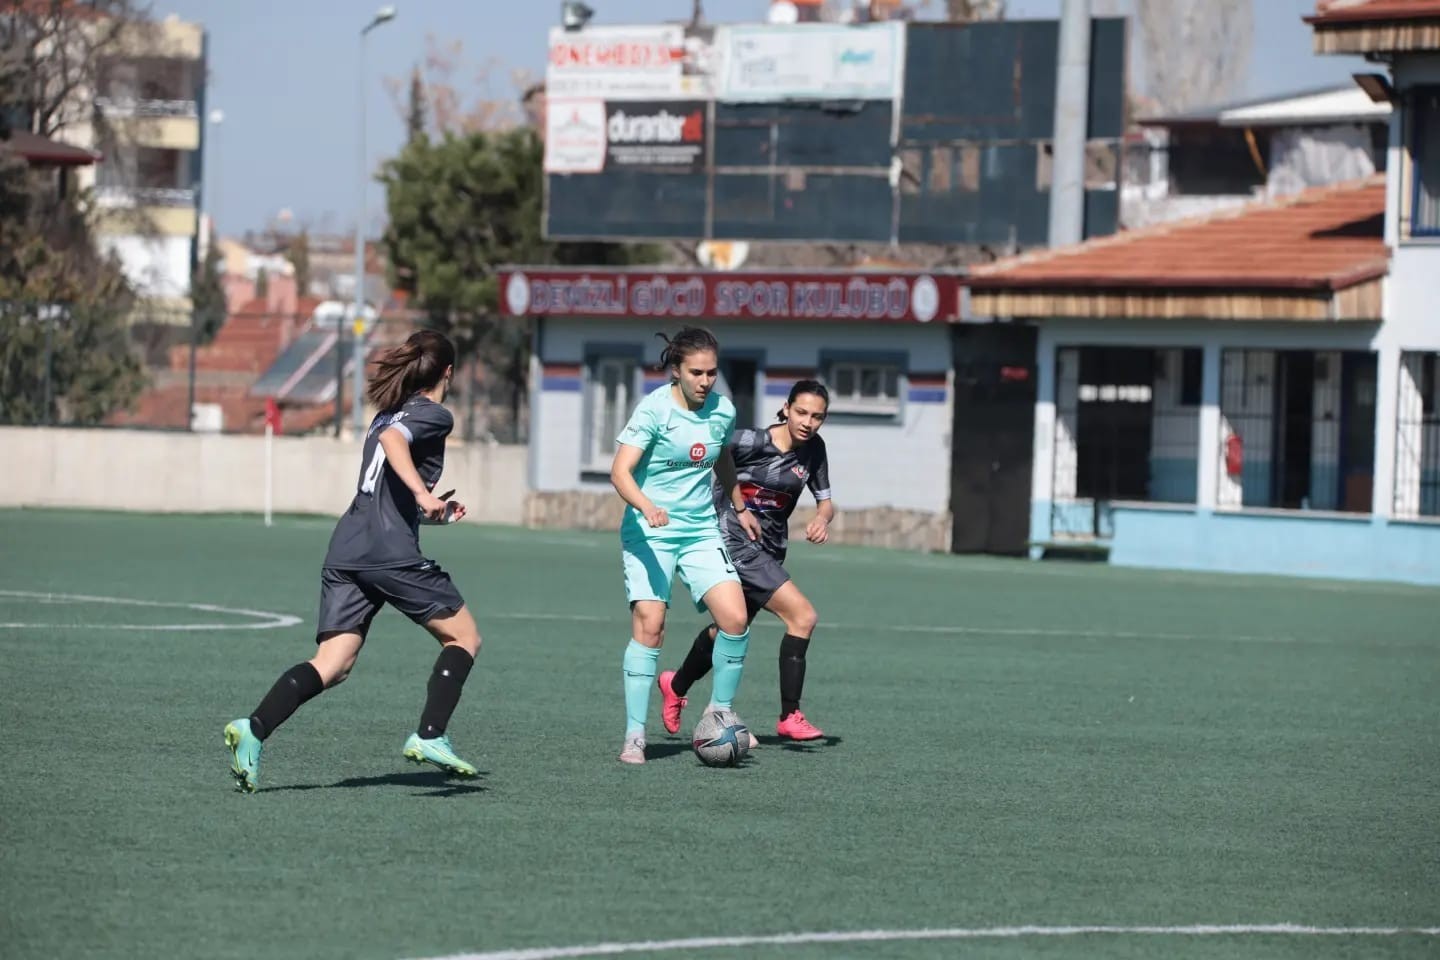 Üstek Group Horozkent Spor, 3 puanı 3 golle kazandı #denizli